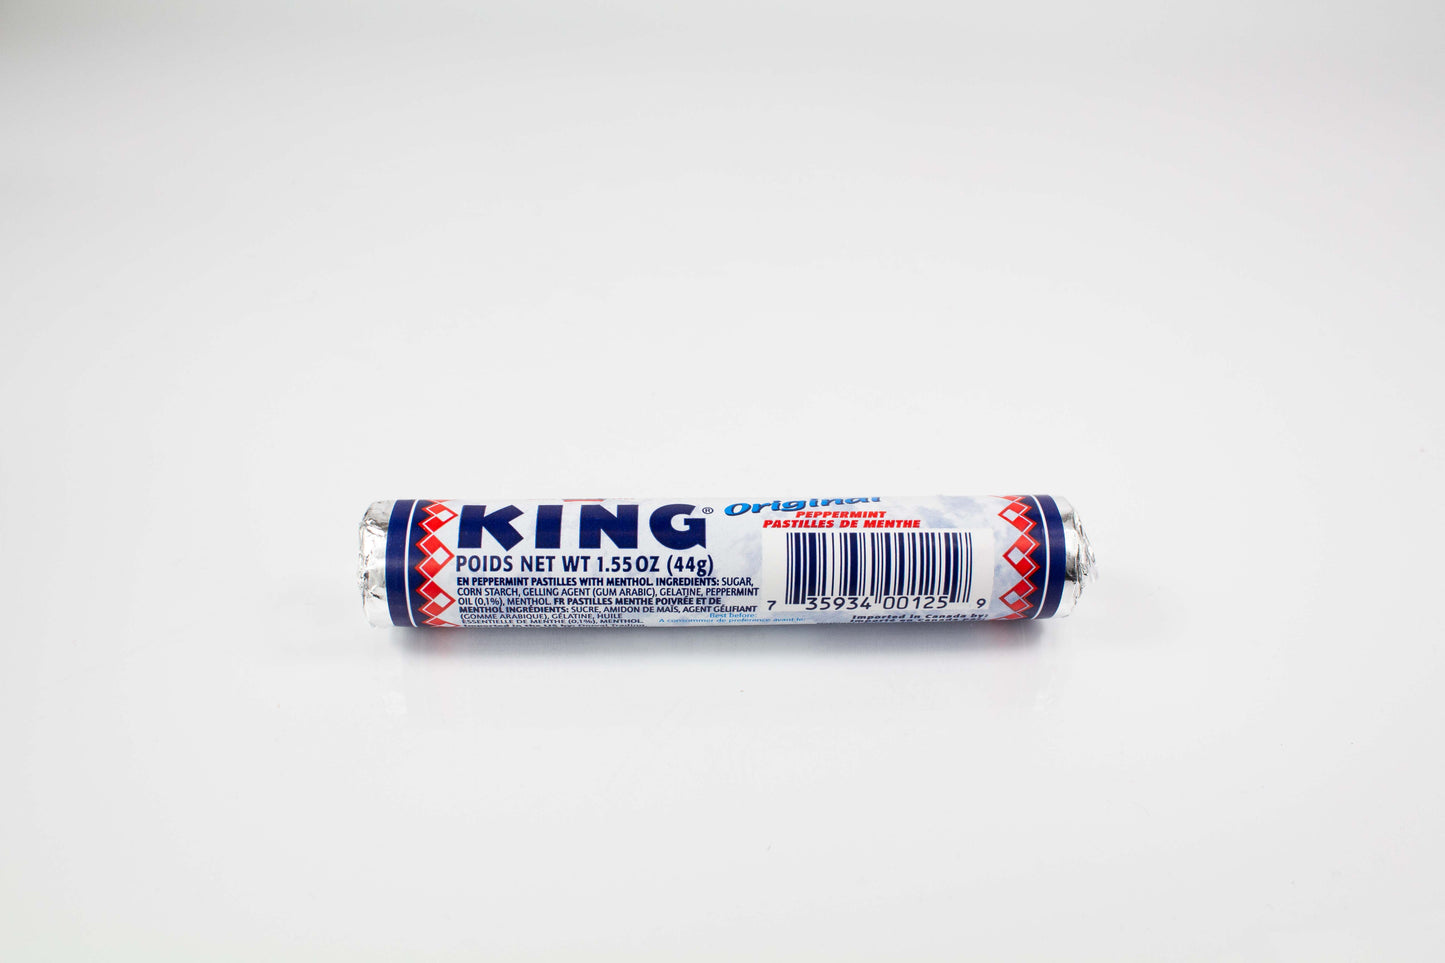 King Original Peppermint Roll